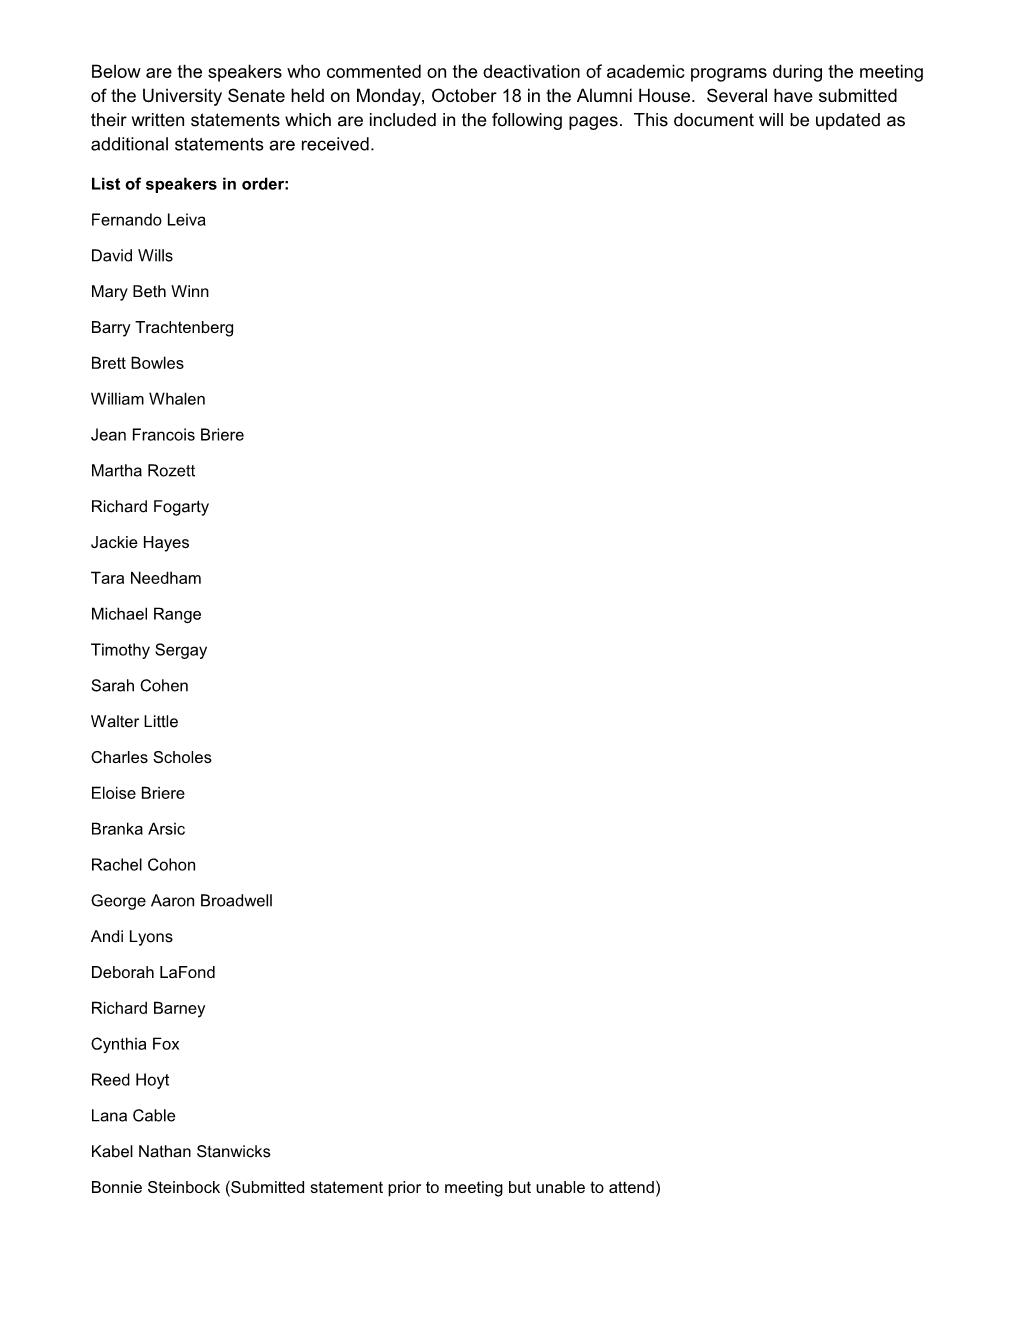 List of Speakers in Order